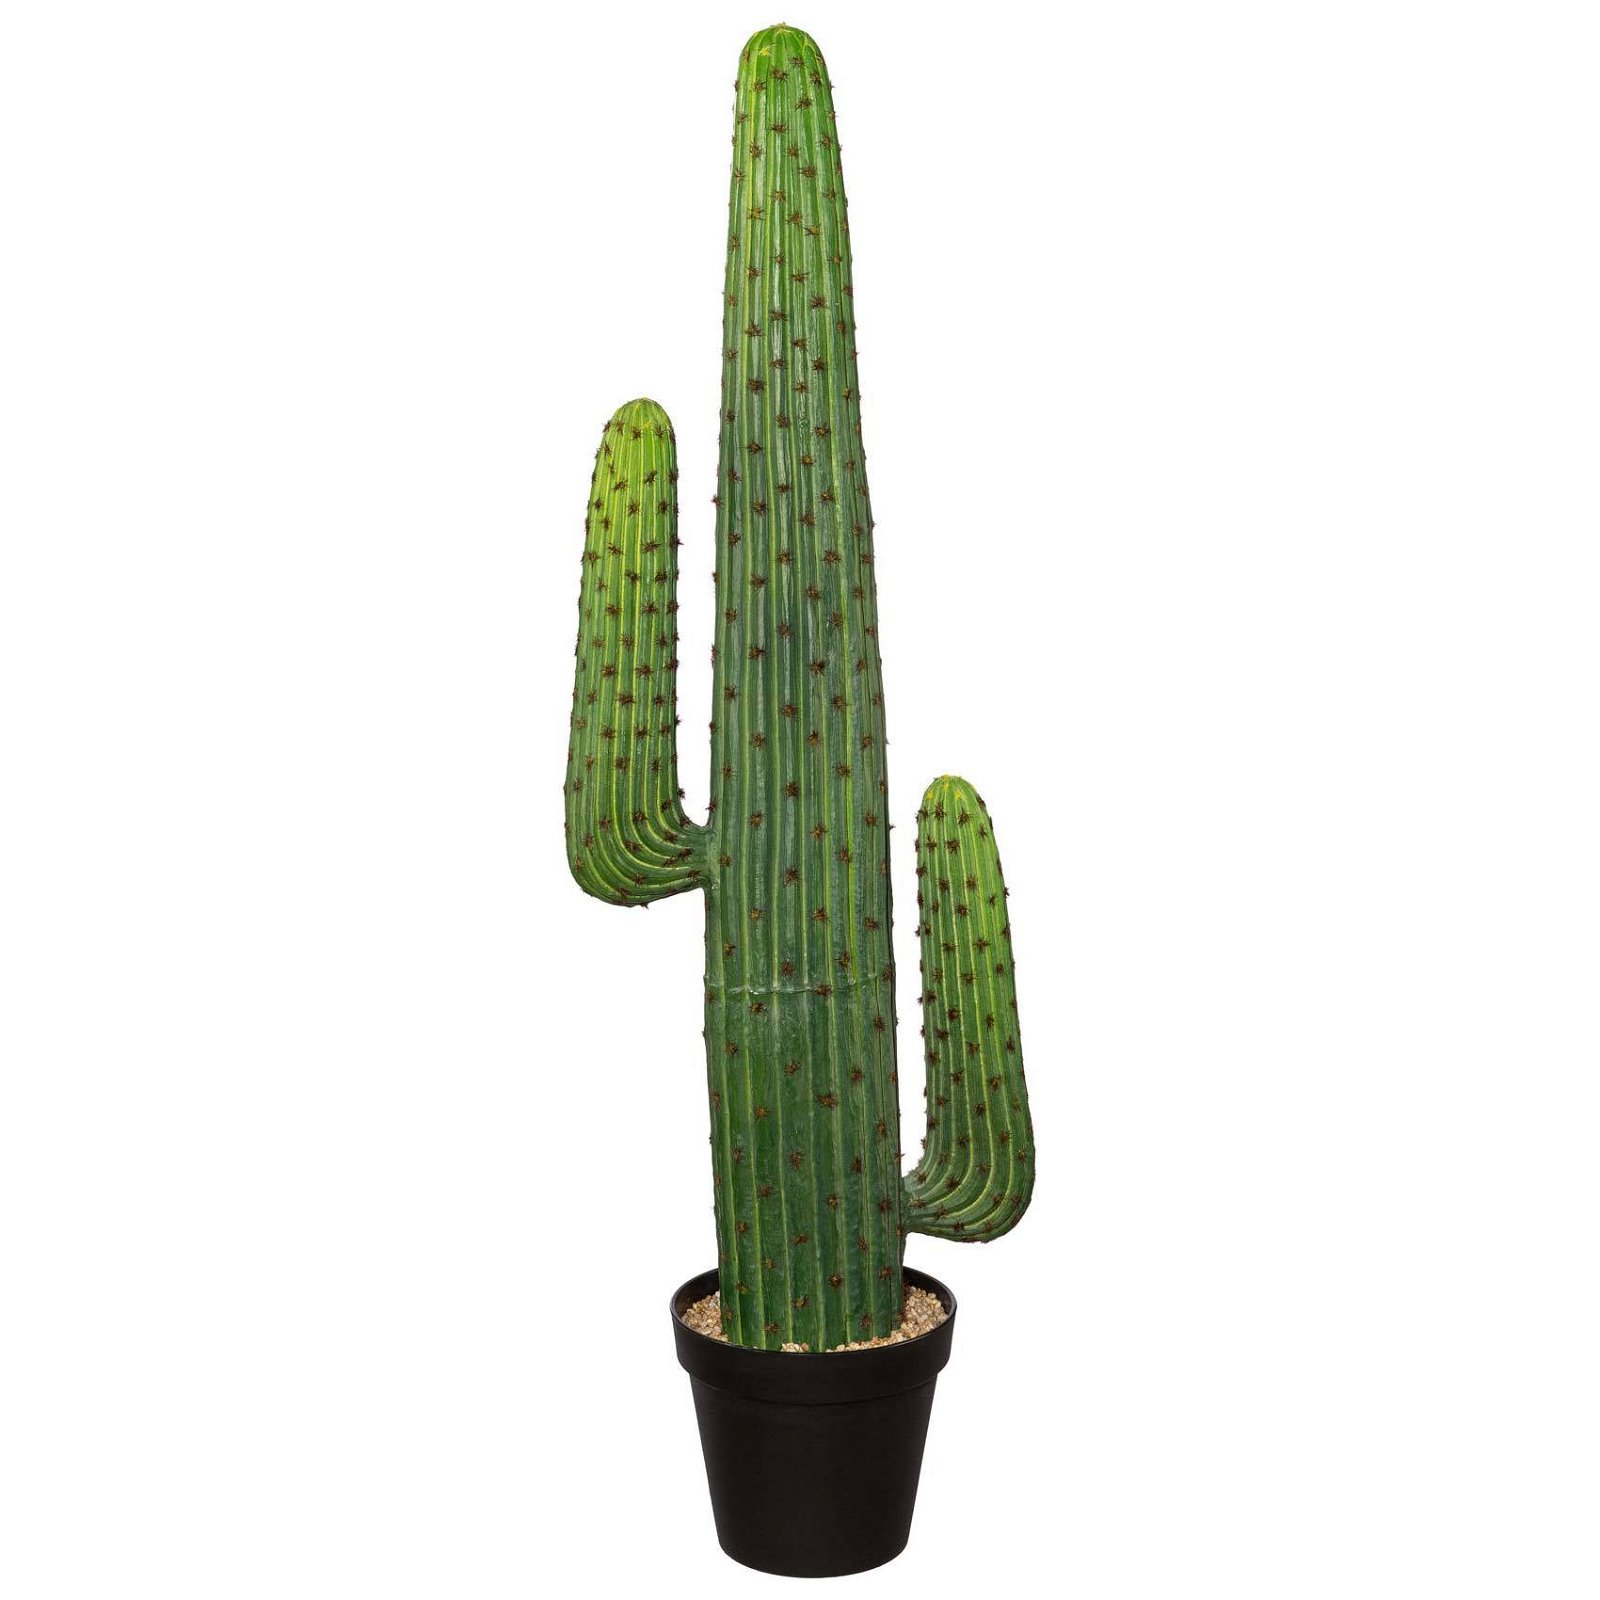 https://cdn.pflanzen-koelle.de/media/75/fa/b8/1659621901/2220102023-Kaktus-Mexiko-gruen_66997.jpg